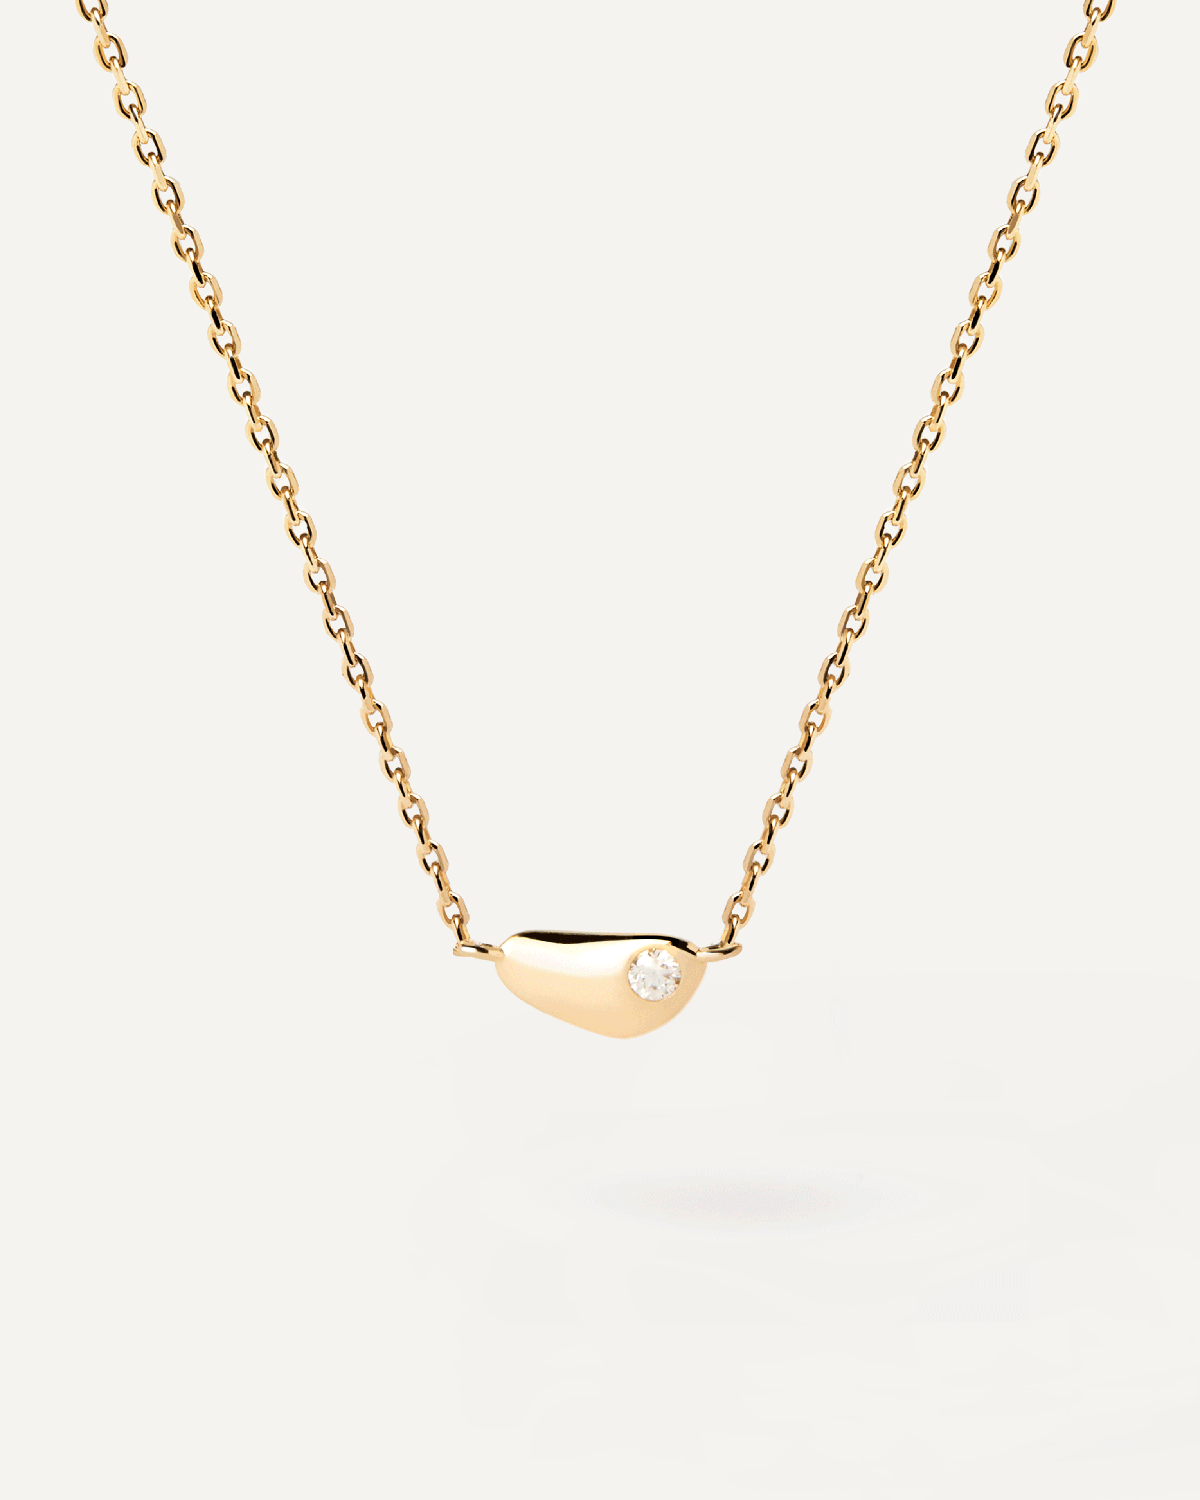 Collier Delta. Collier minimaliste de forme fluide en plaqué or avec un pendentif en zircon affleurant. Découvrez les dernières nouveautés de chez PDPAOLA. Commandez et recevez votre bijou en toute sérénité.